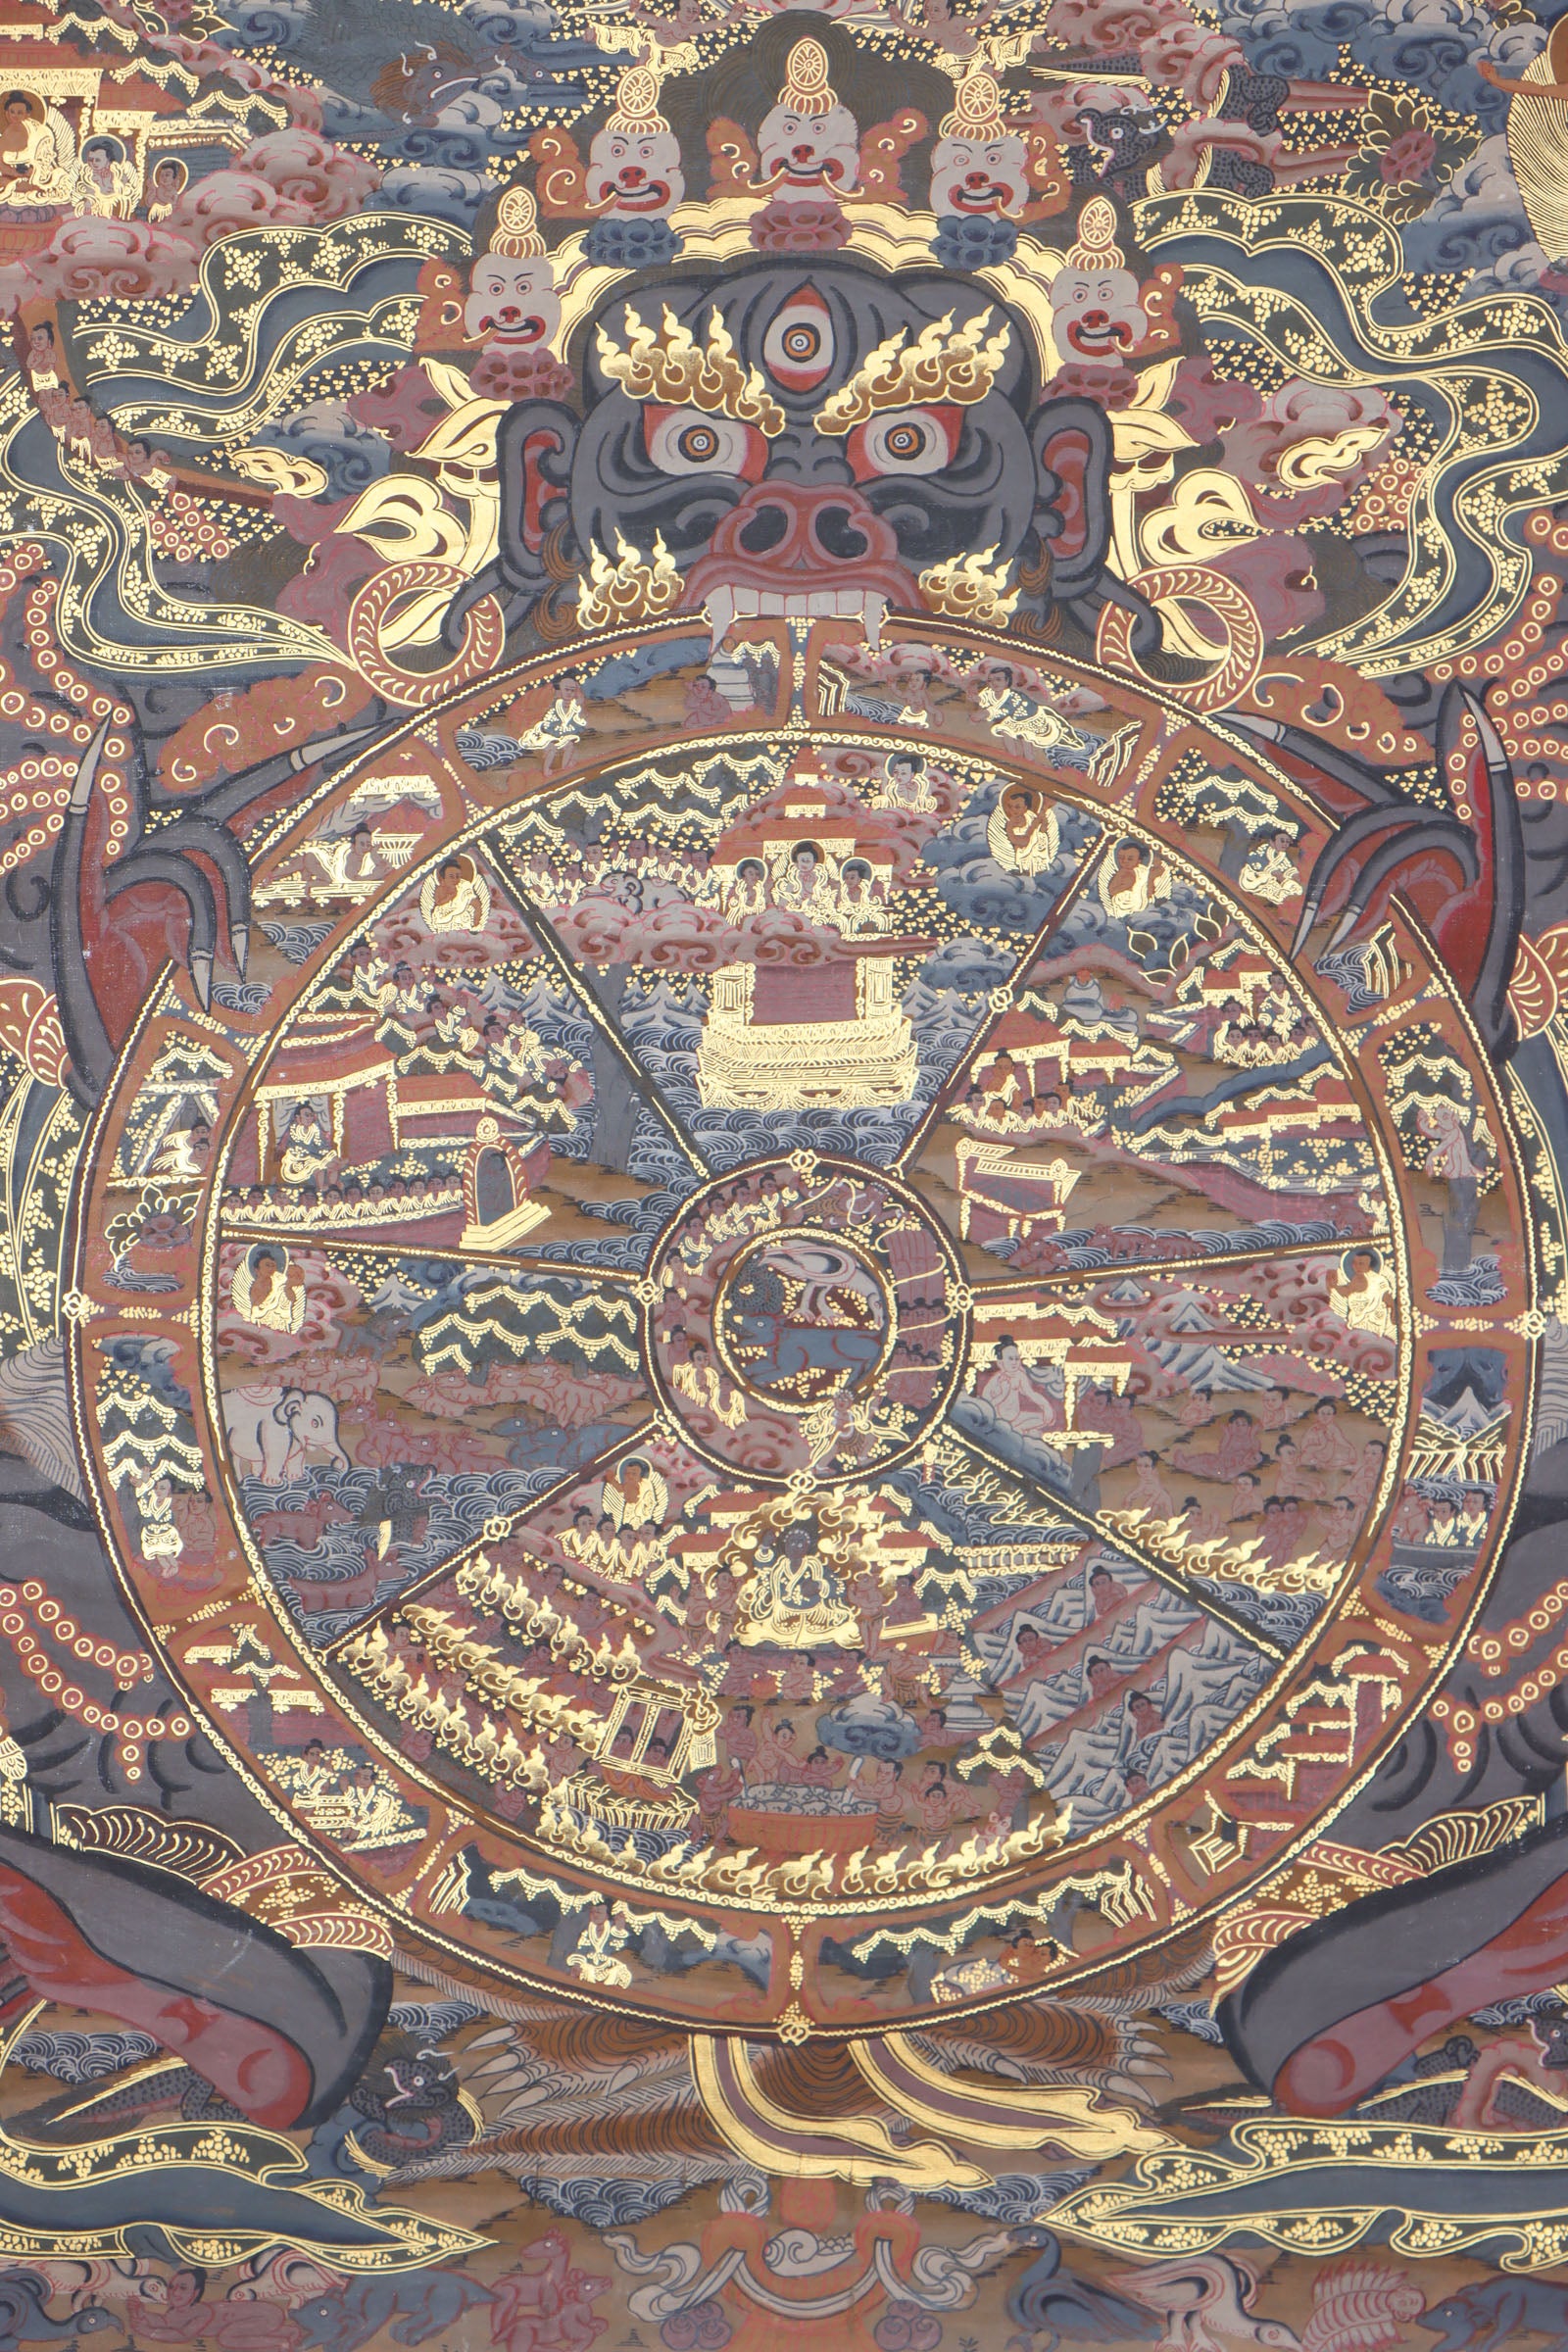 Wheel of Life Thangka for meditation and spirituality.